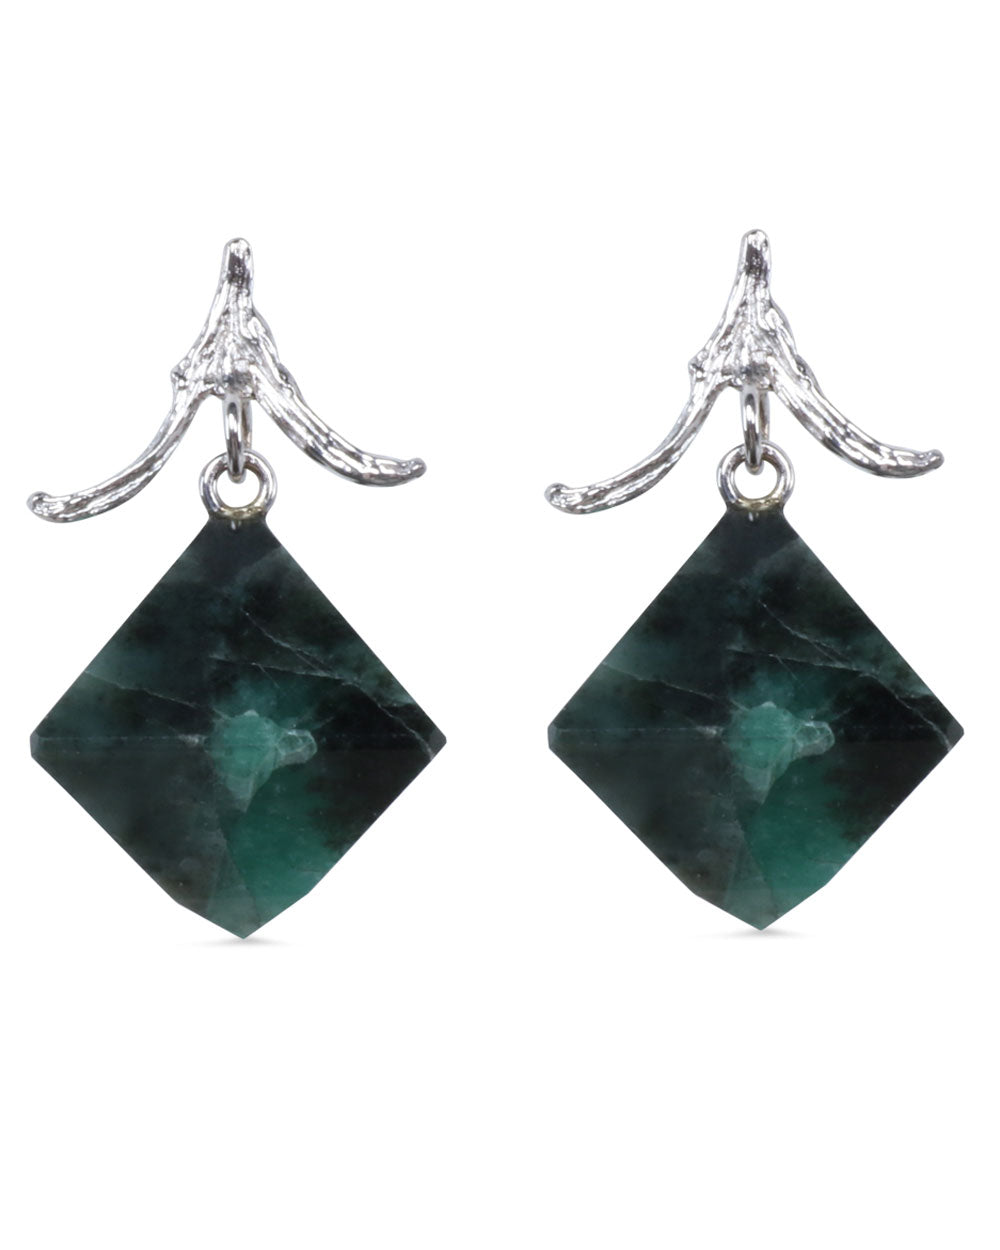 Emerald Octahedrons Twig Top Earrings